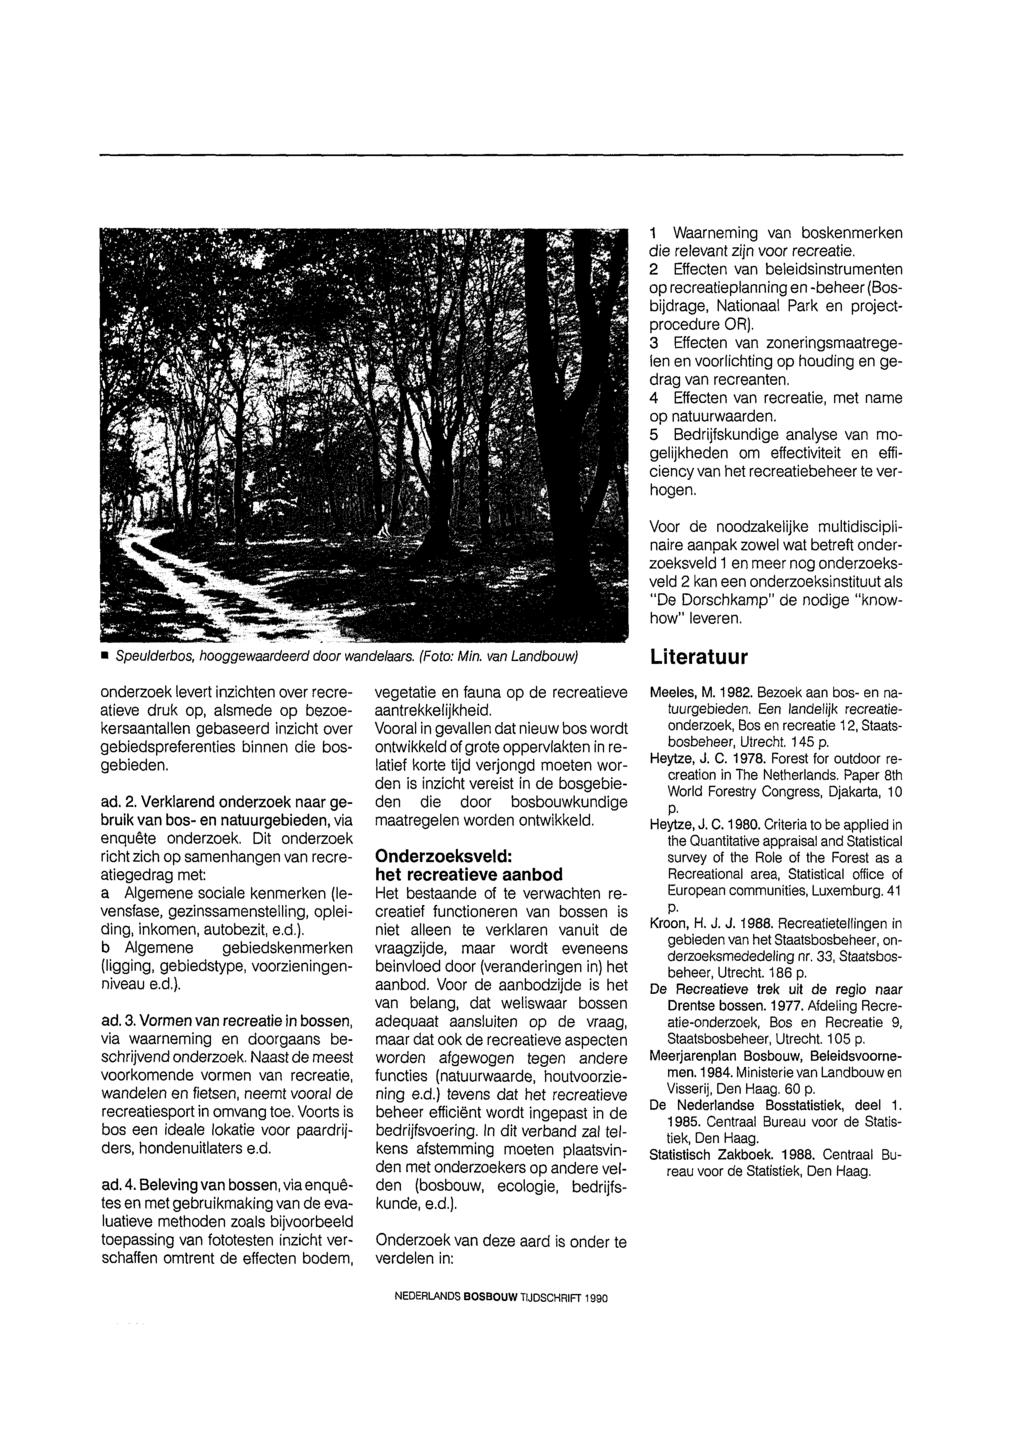 1 Waarneming van boskenmerken die reevant zijn voor recreatie. 2 Effecten van beeidsinstrumenten op recreatiepanning en beheer (Bosbijdrage, Nationaa Park en projectprocedure OR).